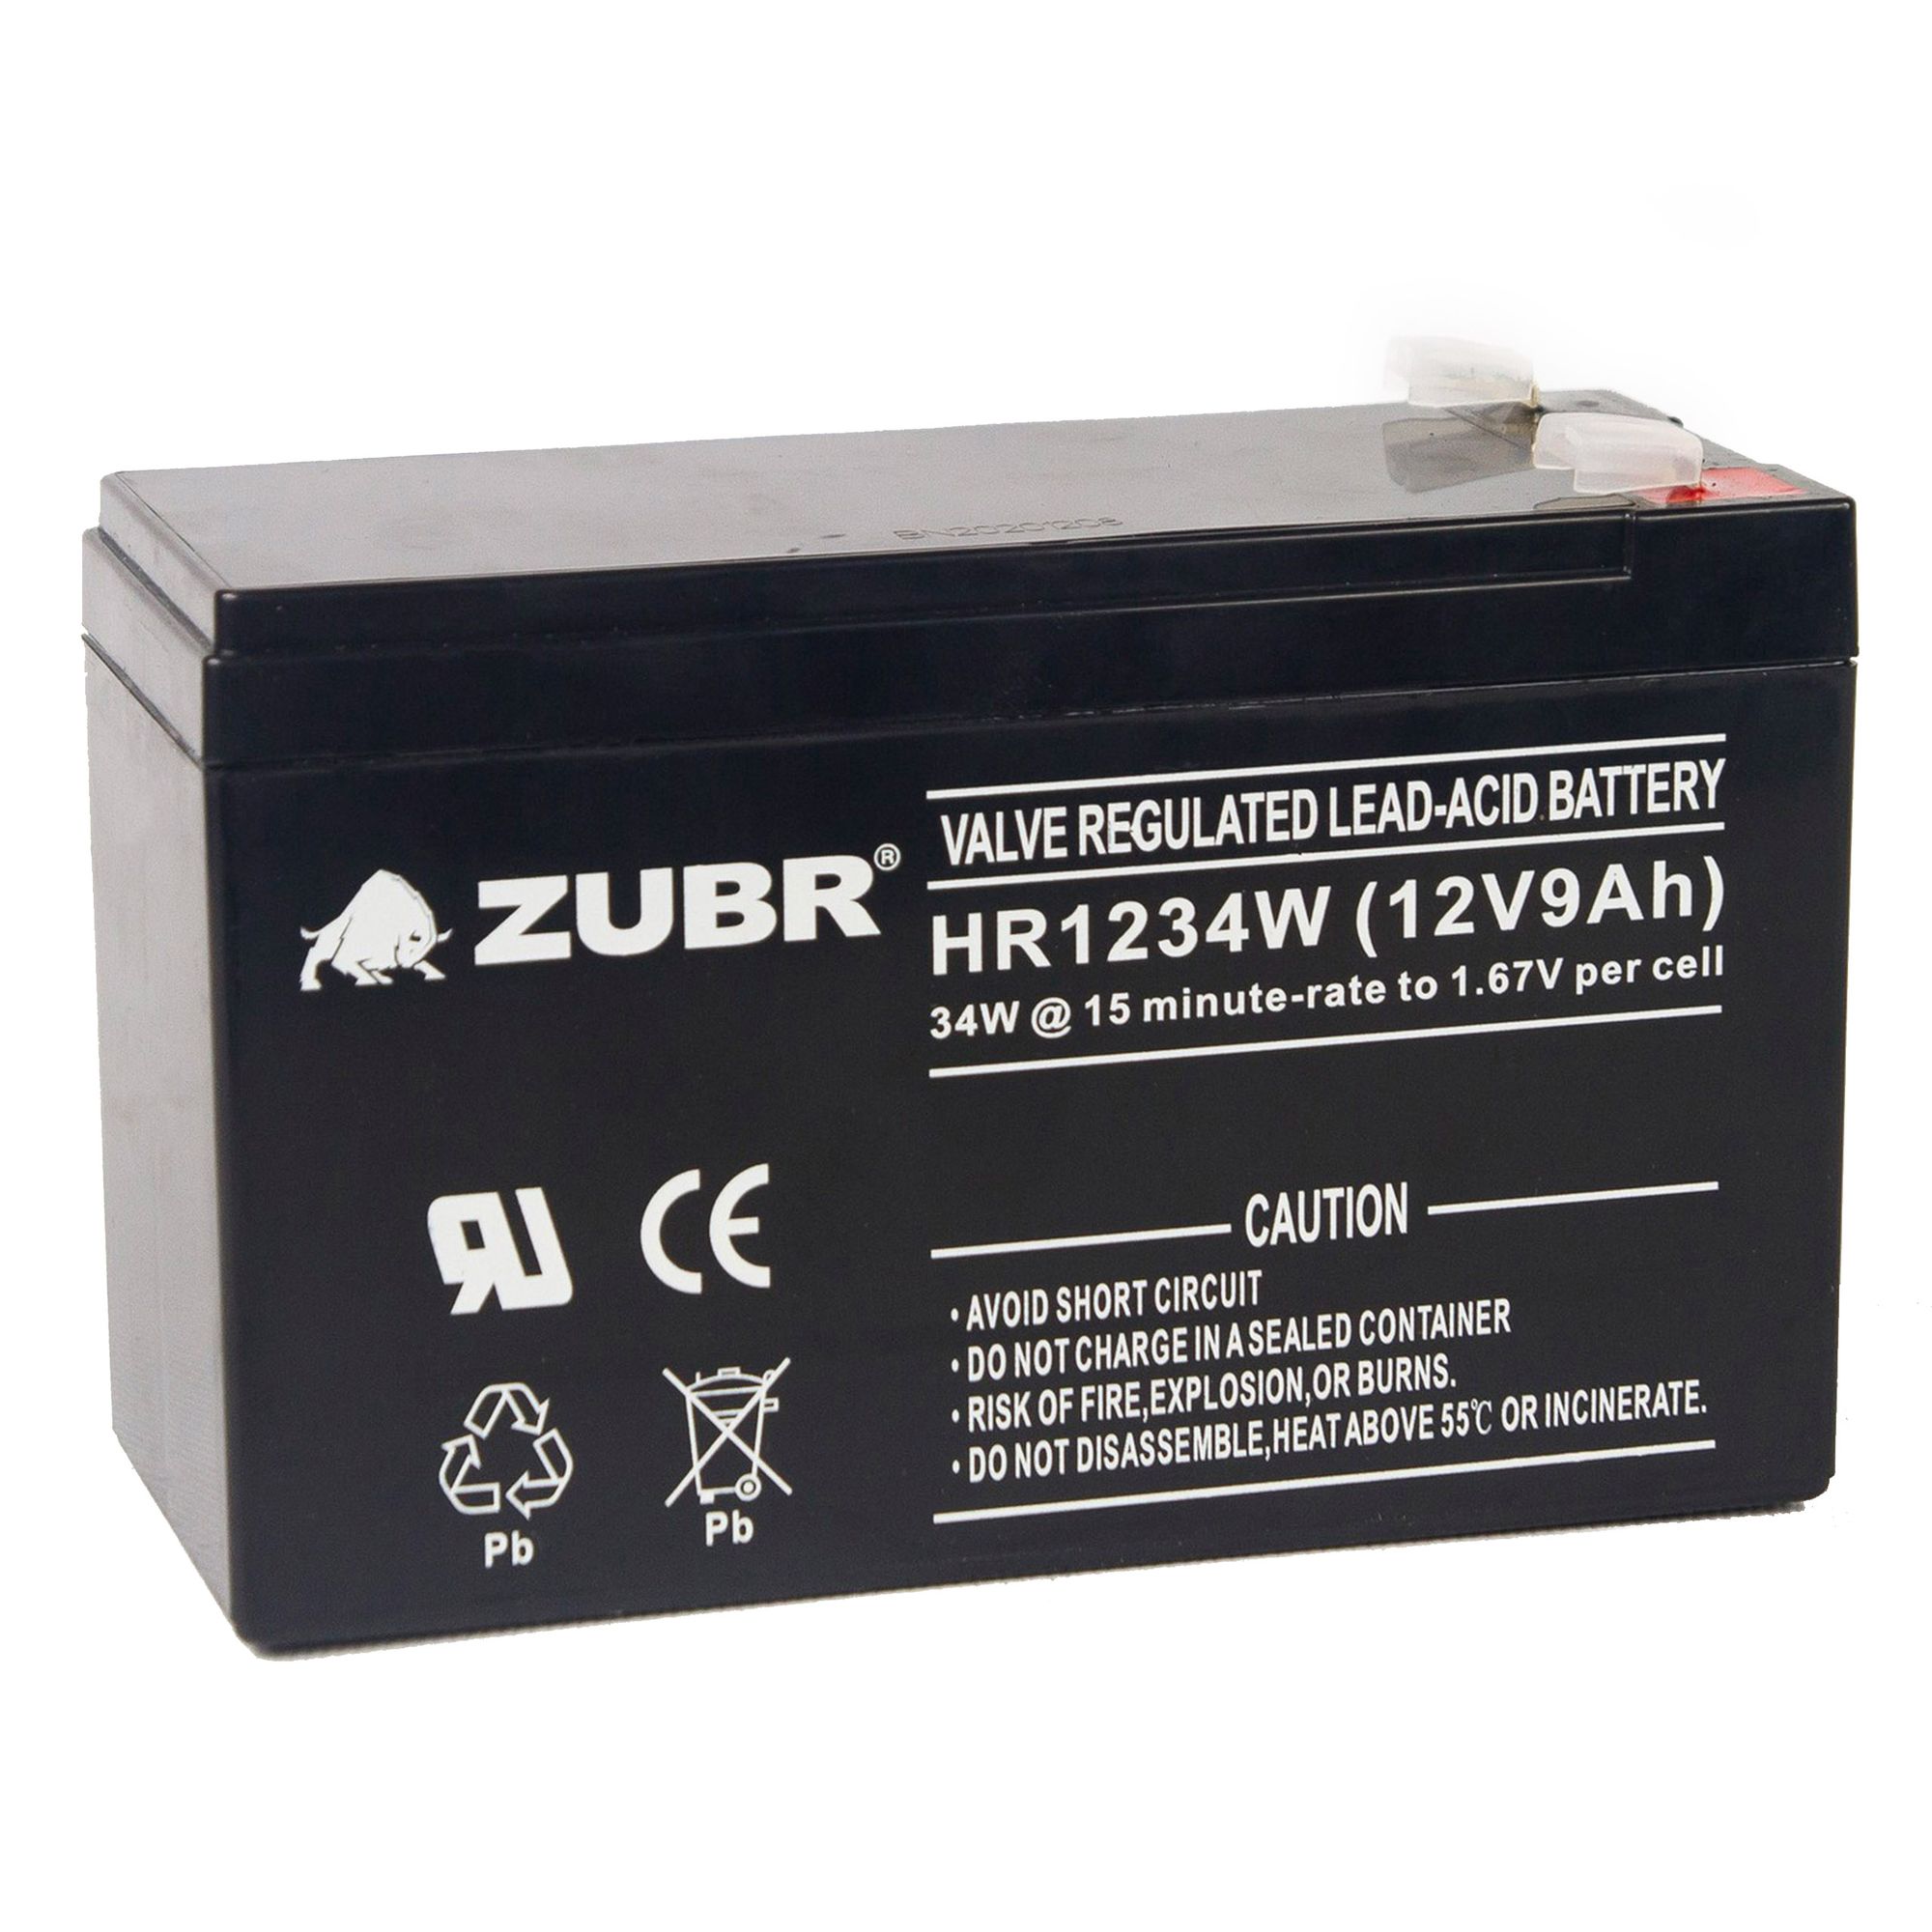 Батарея для ИБП ZUBR HR 1234 W (12V, 9Ah) (HR1234W) батарея 12v 9 0ah wbr hr1234w 12v 9ah